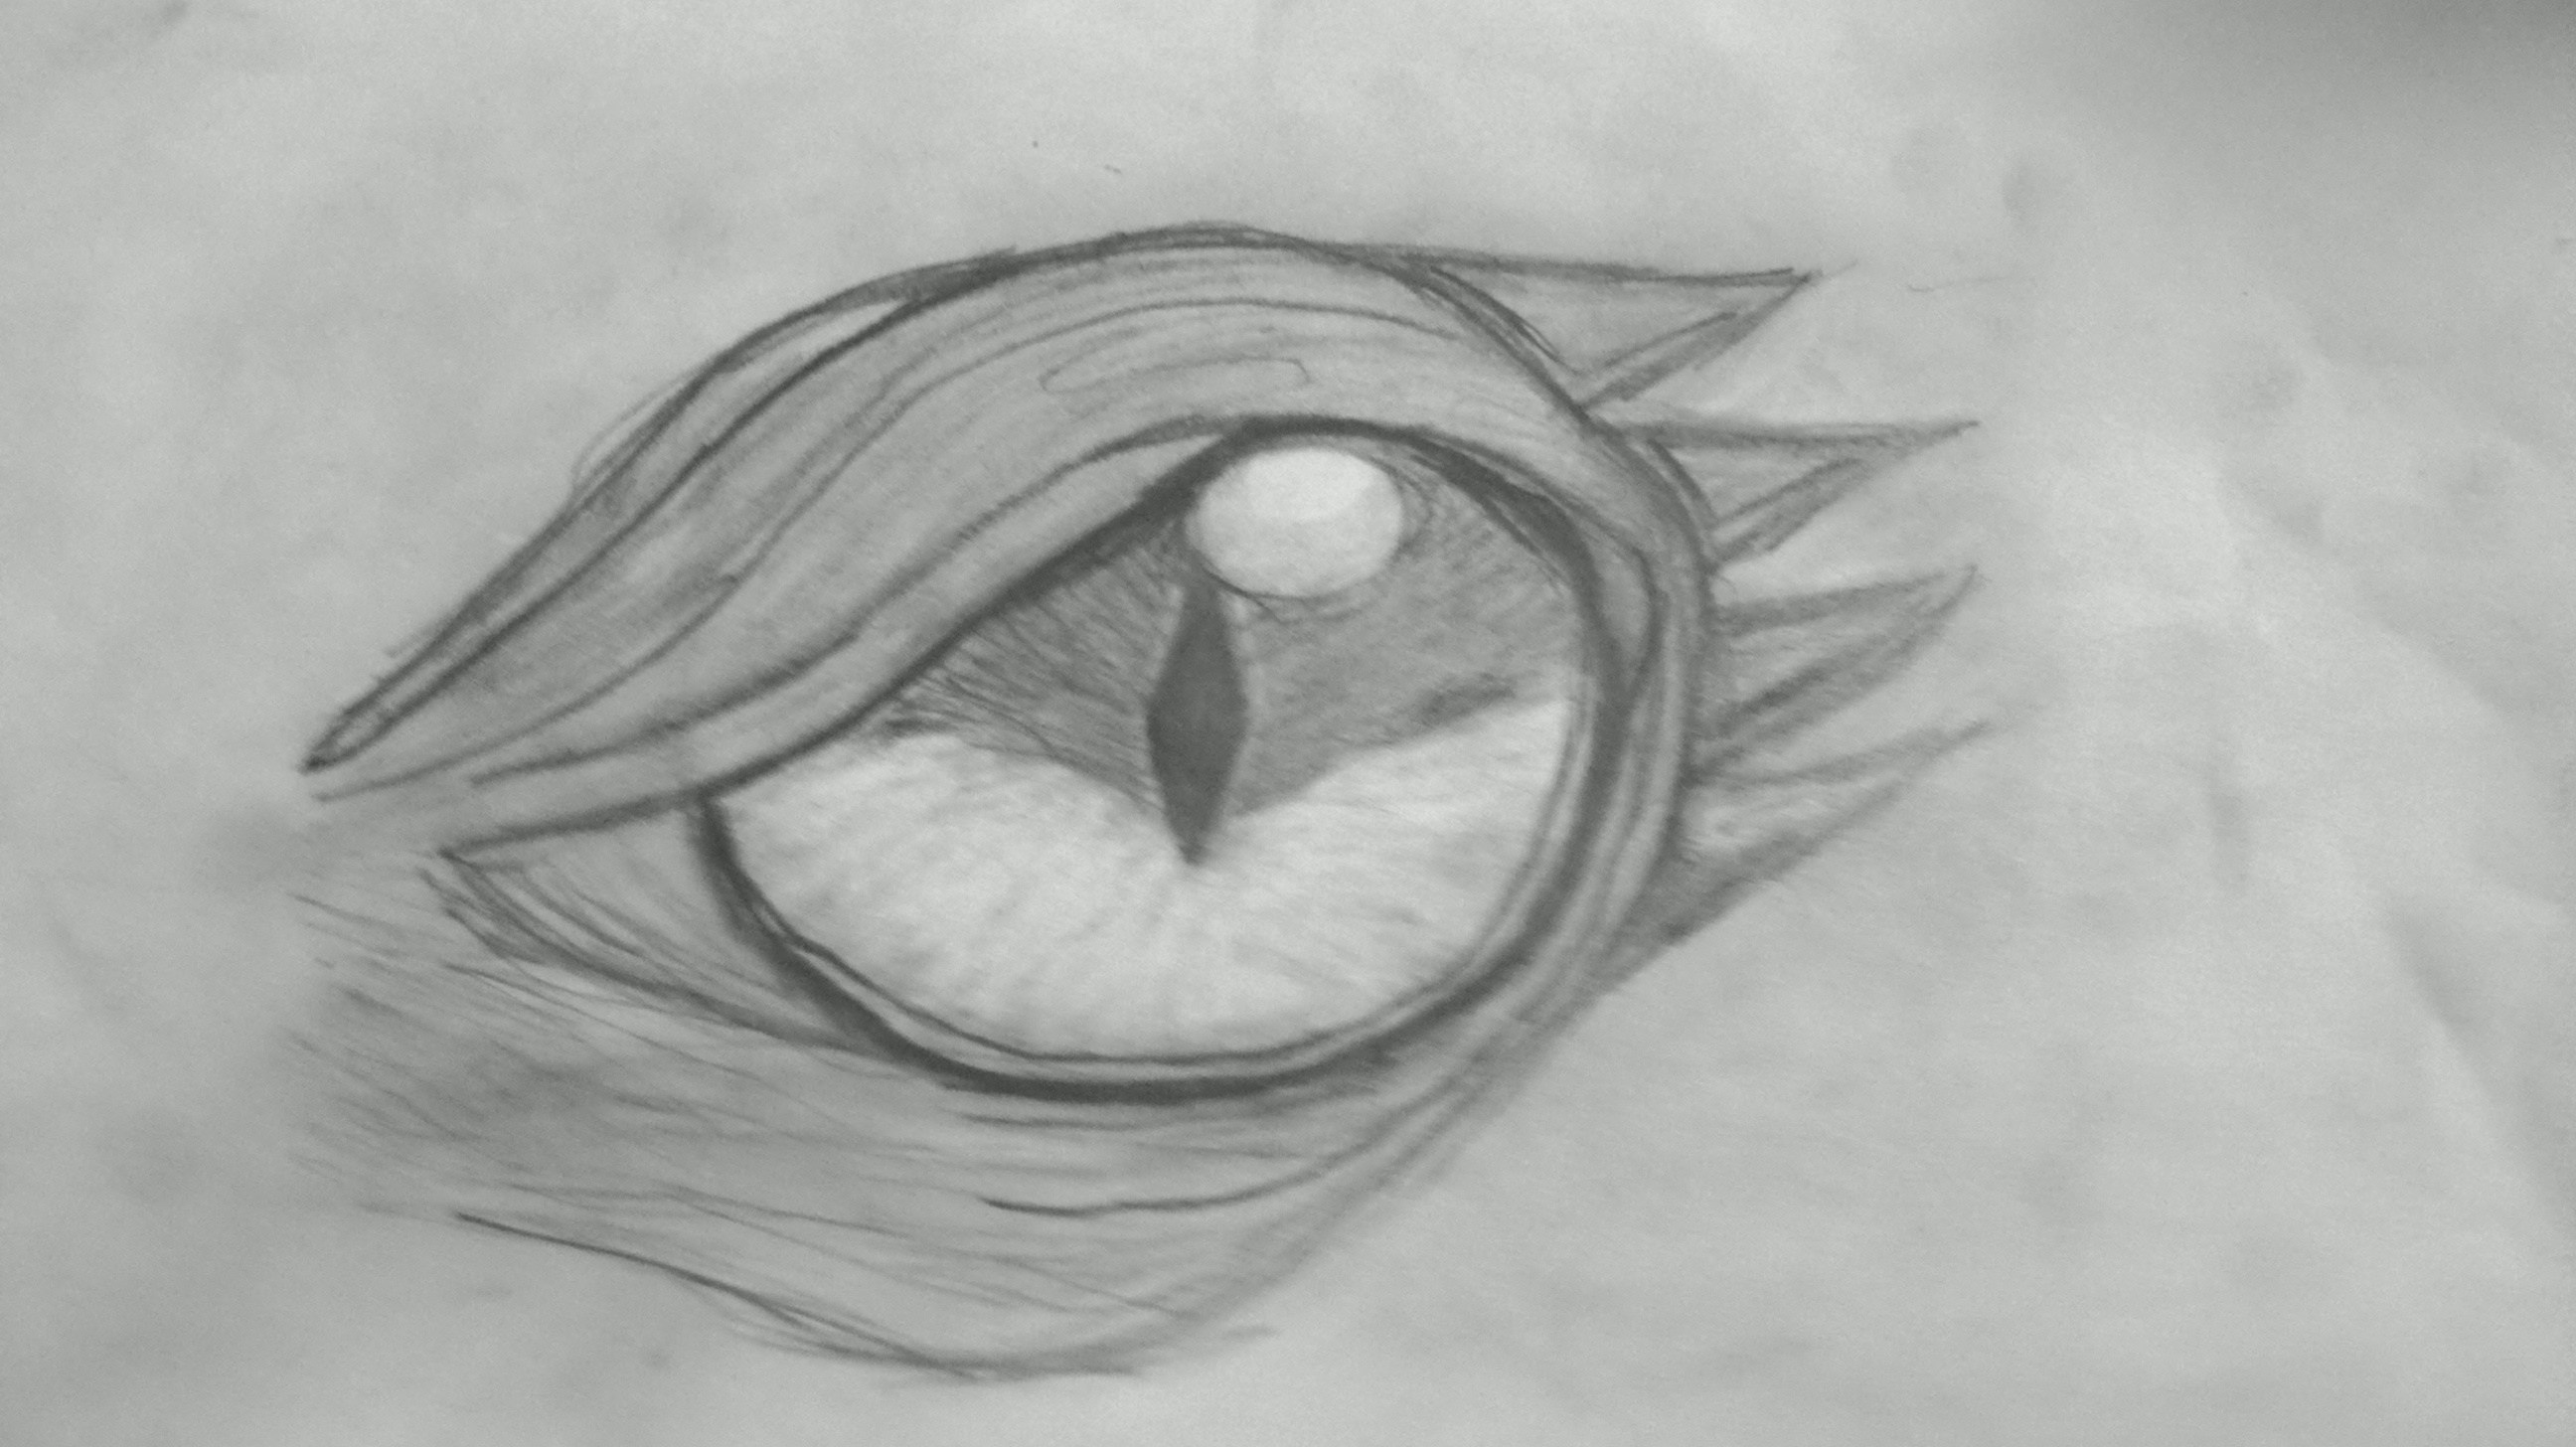 Dragon Eye Pencil Drawing At Paintingvalley Com Explore Collection Of Dragon Eye Pencil Drawing